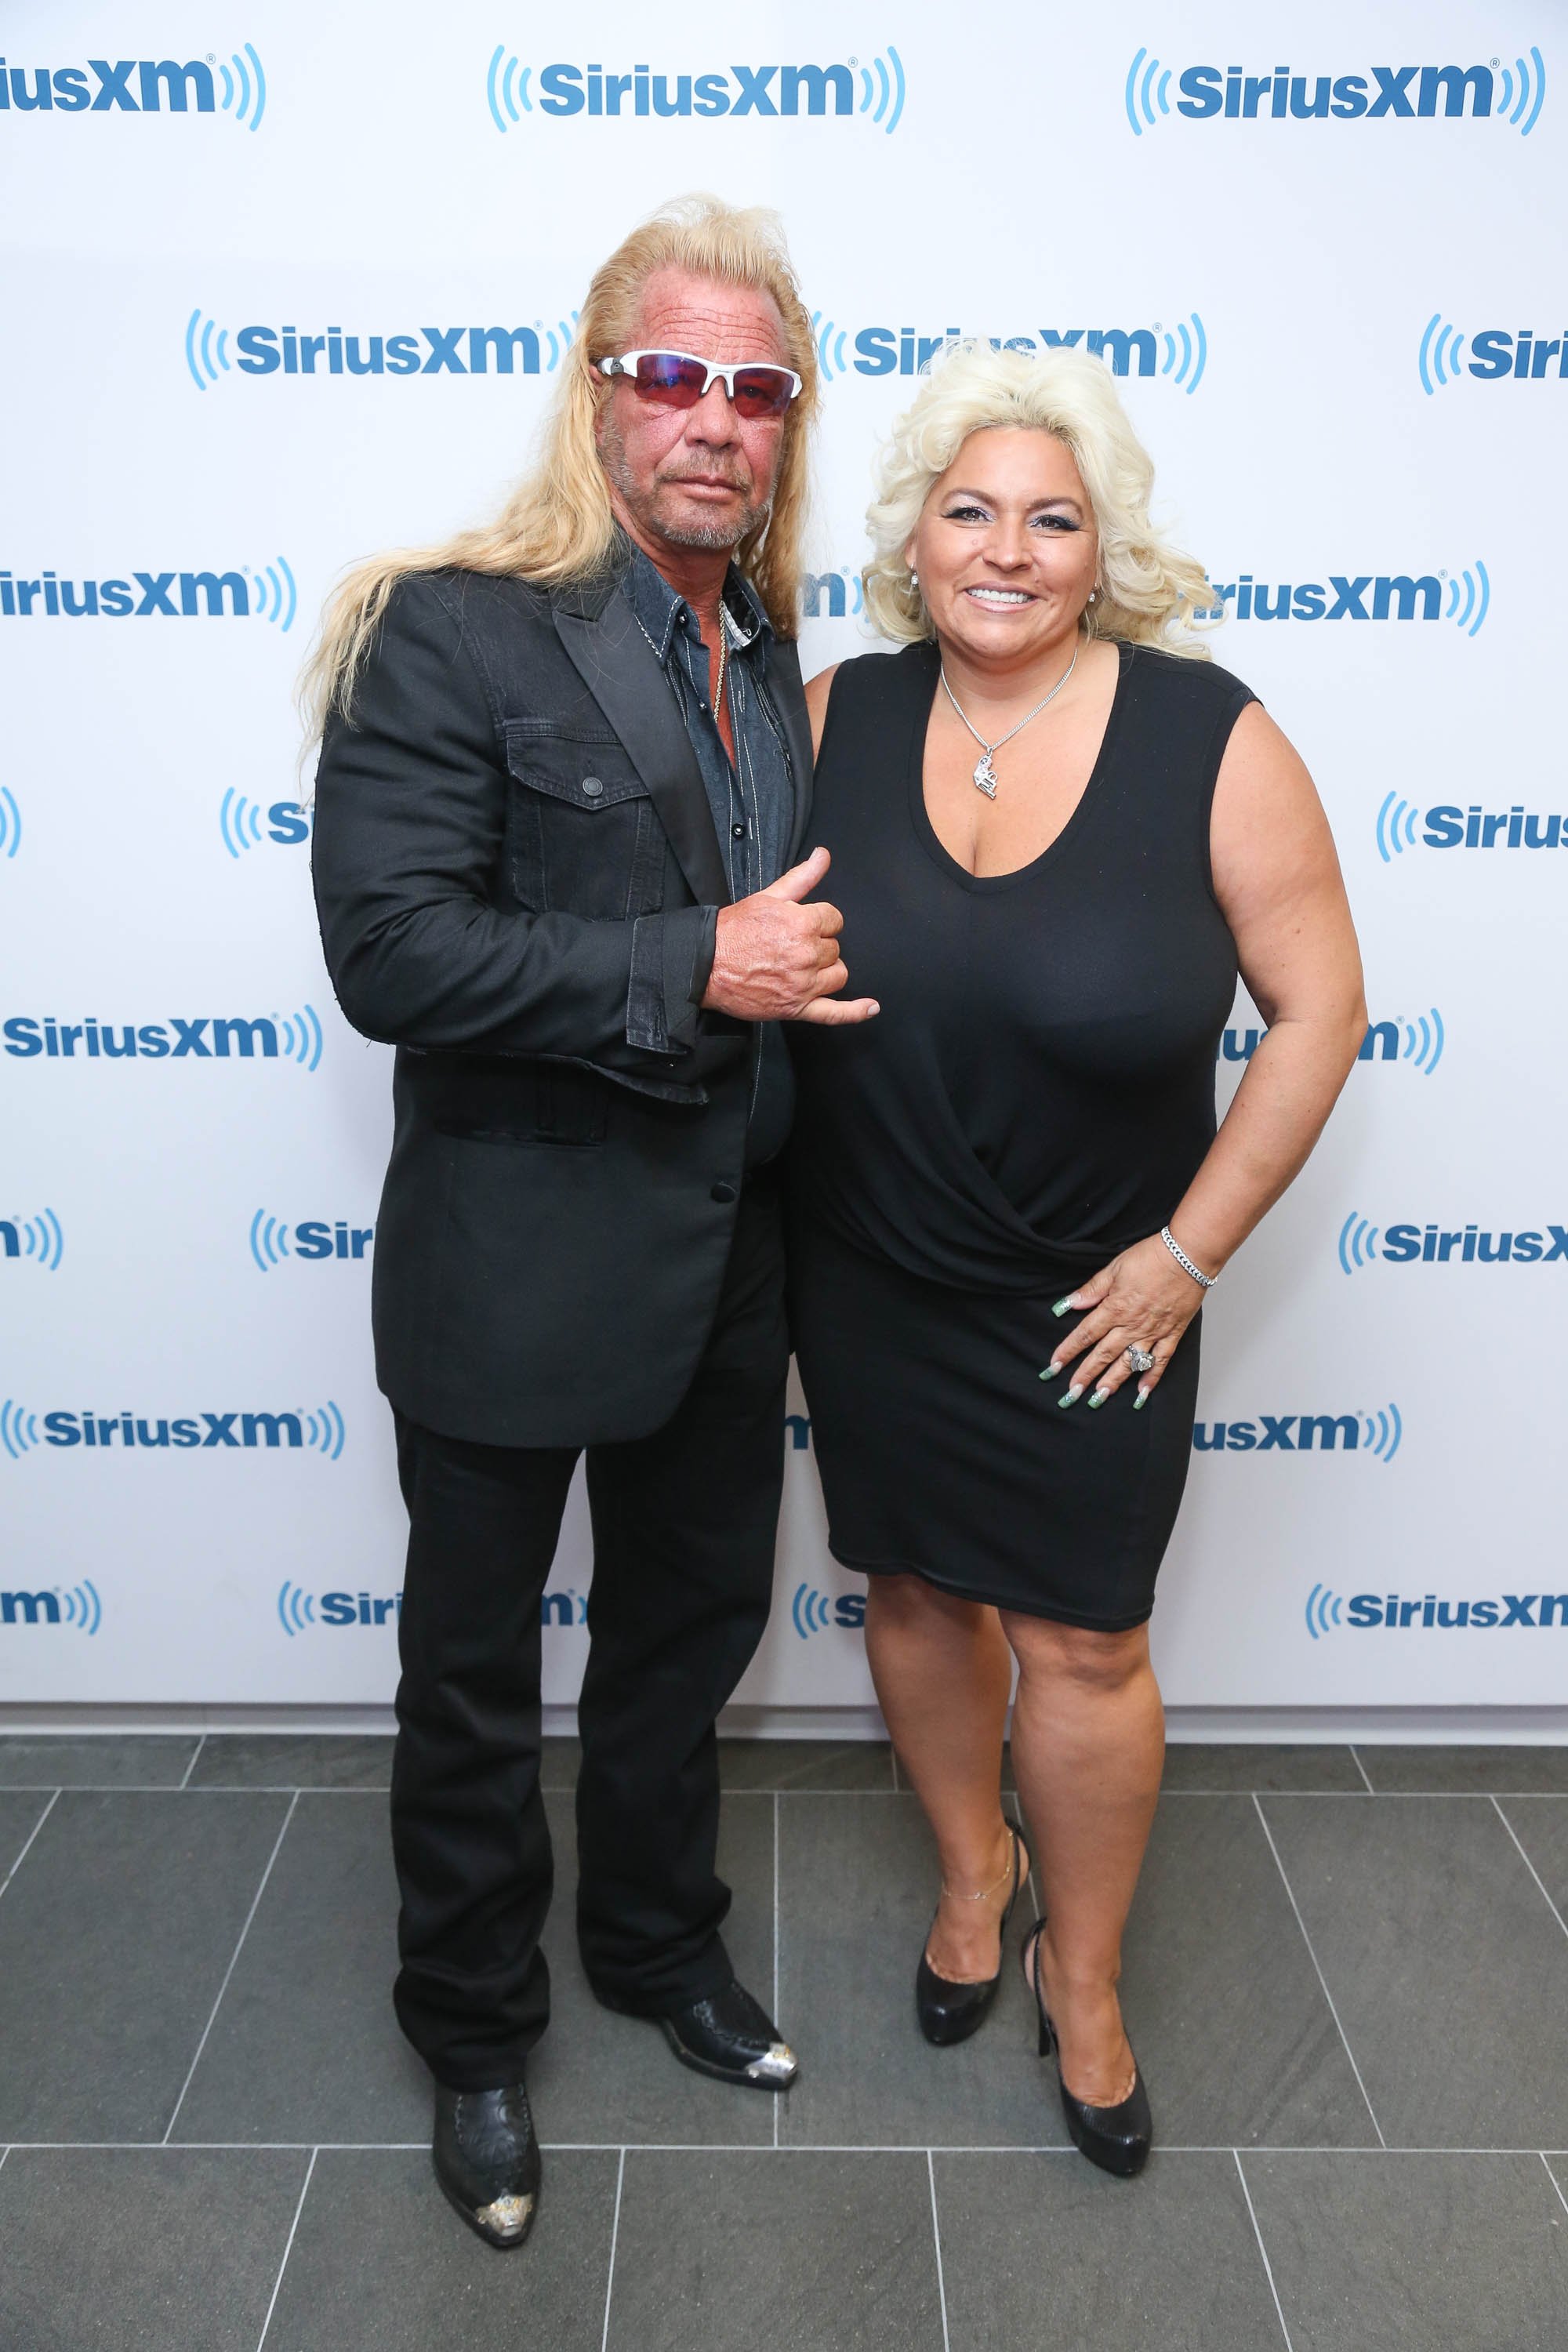 Duane y Beth Chapman visitan los estudios SiriusXM en la ciudad de Nueva York el 9 de junio de 2014 | Foto: Getty Images